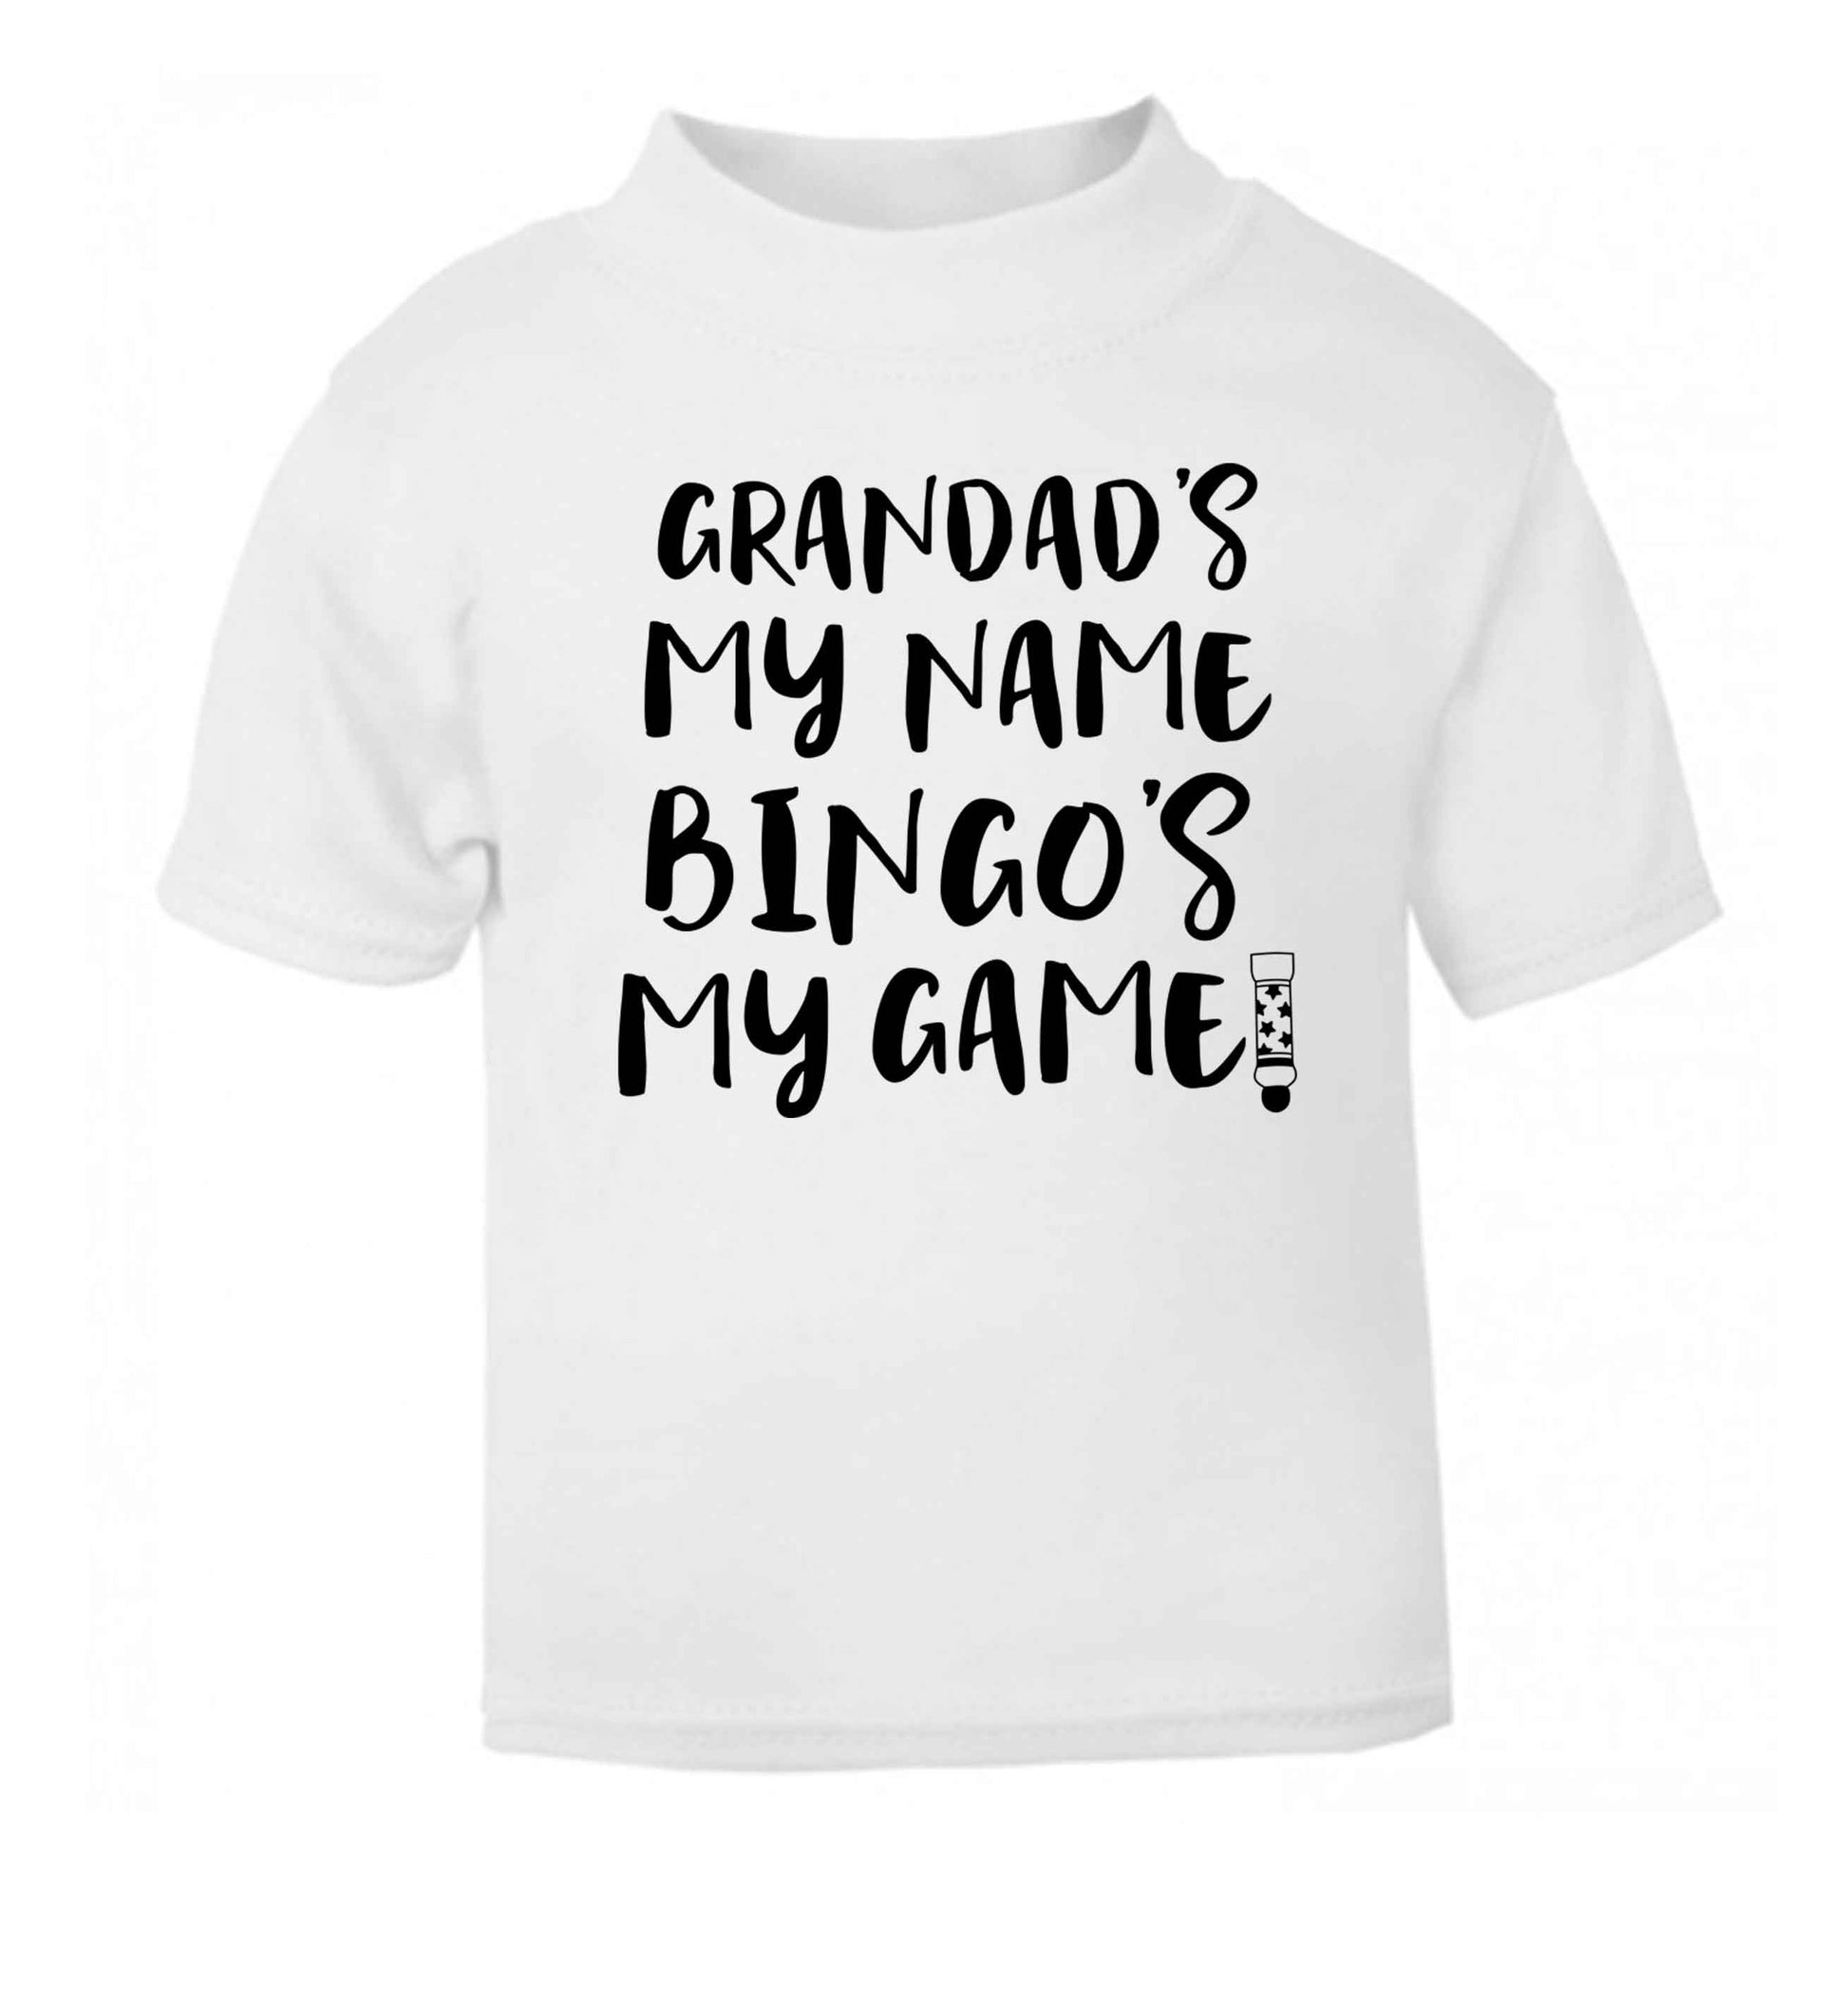 Grandad's my name bingo's my game! white Baby Toddler Tshirt 2 Years